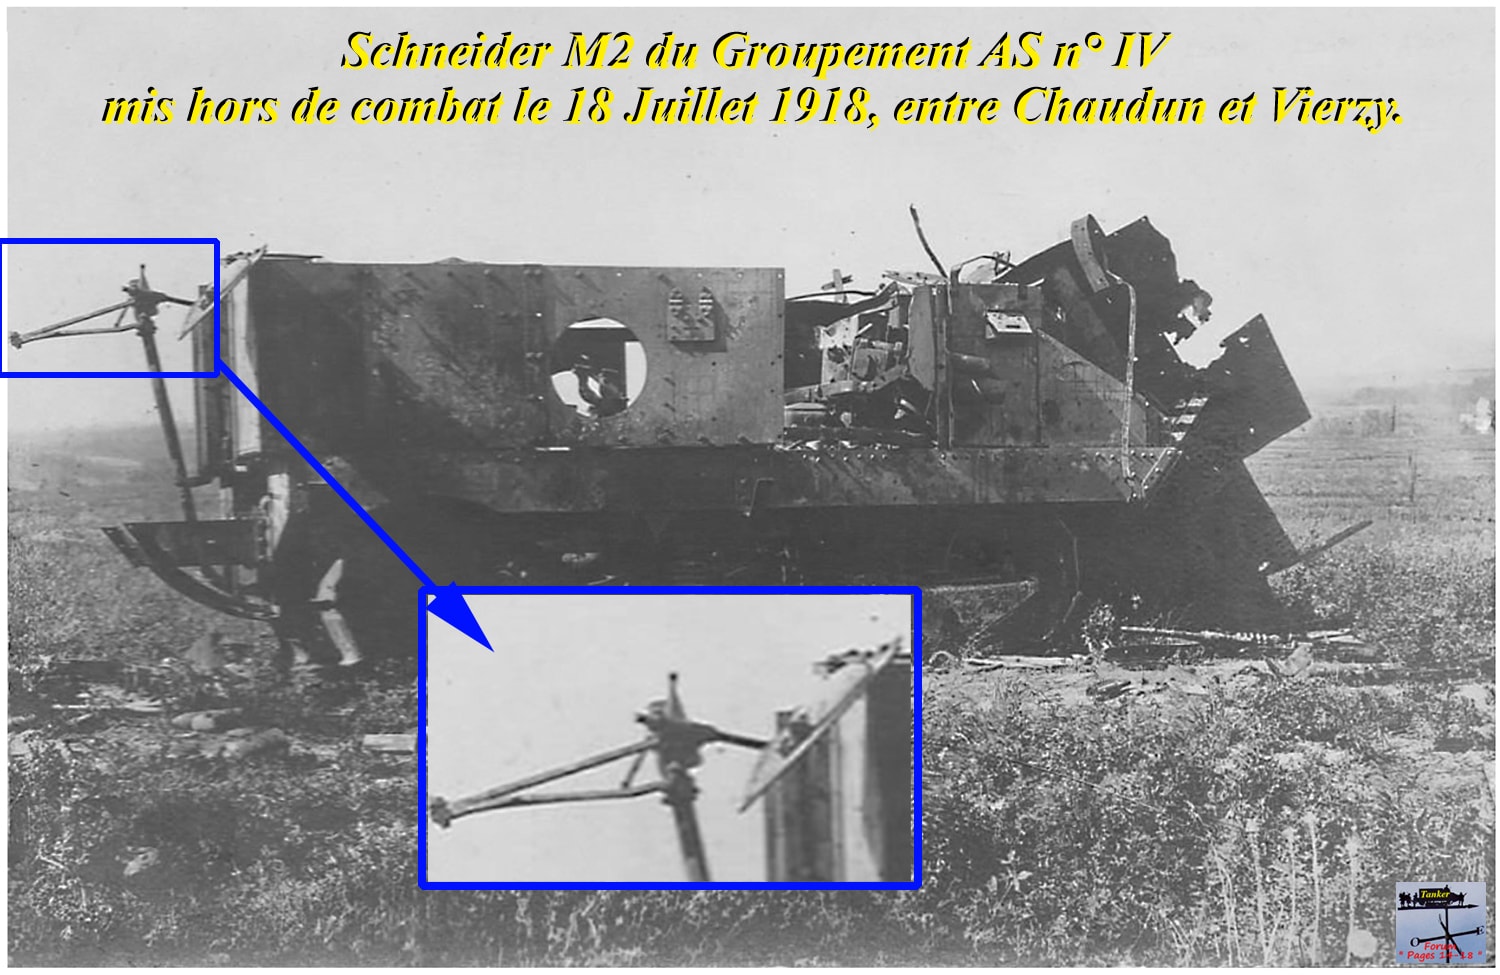 02 - Schneider M2 Asx3 détruit vers Chaudun-min.jpg